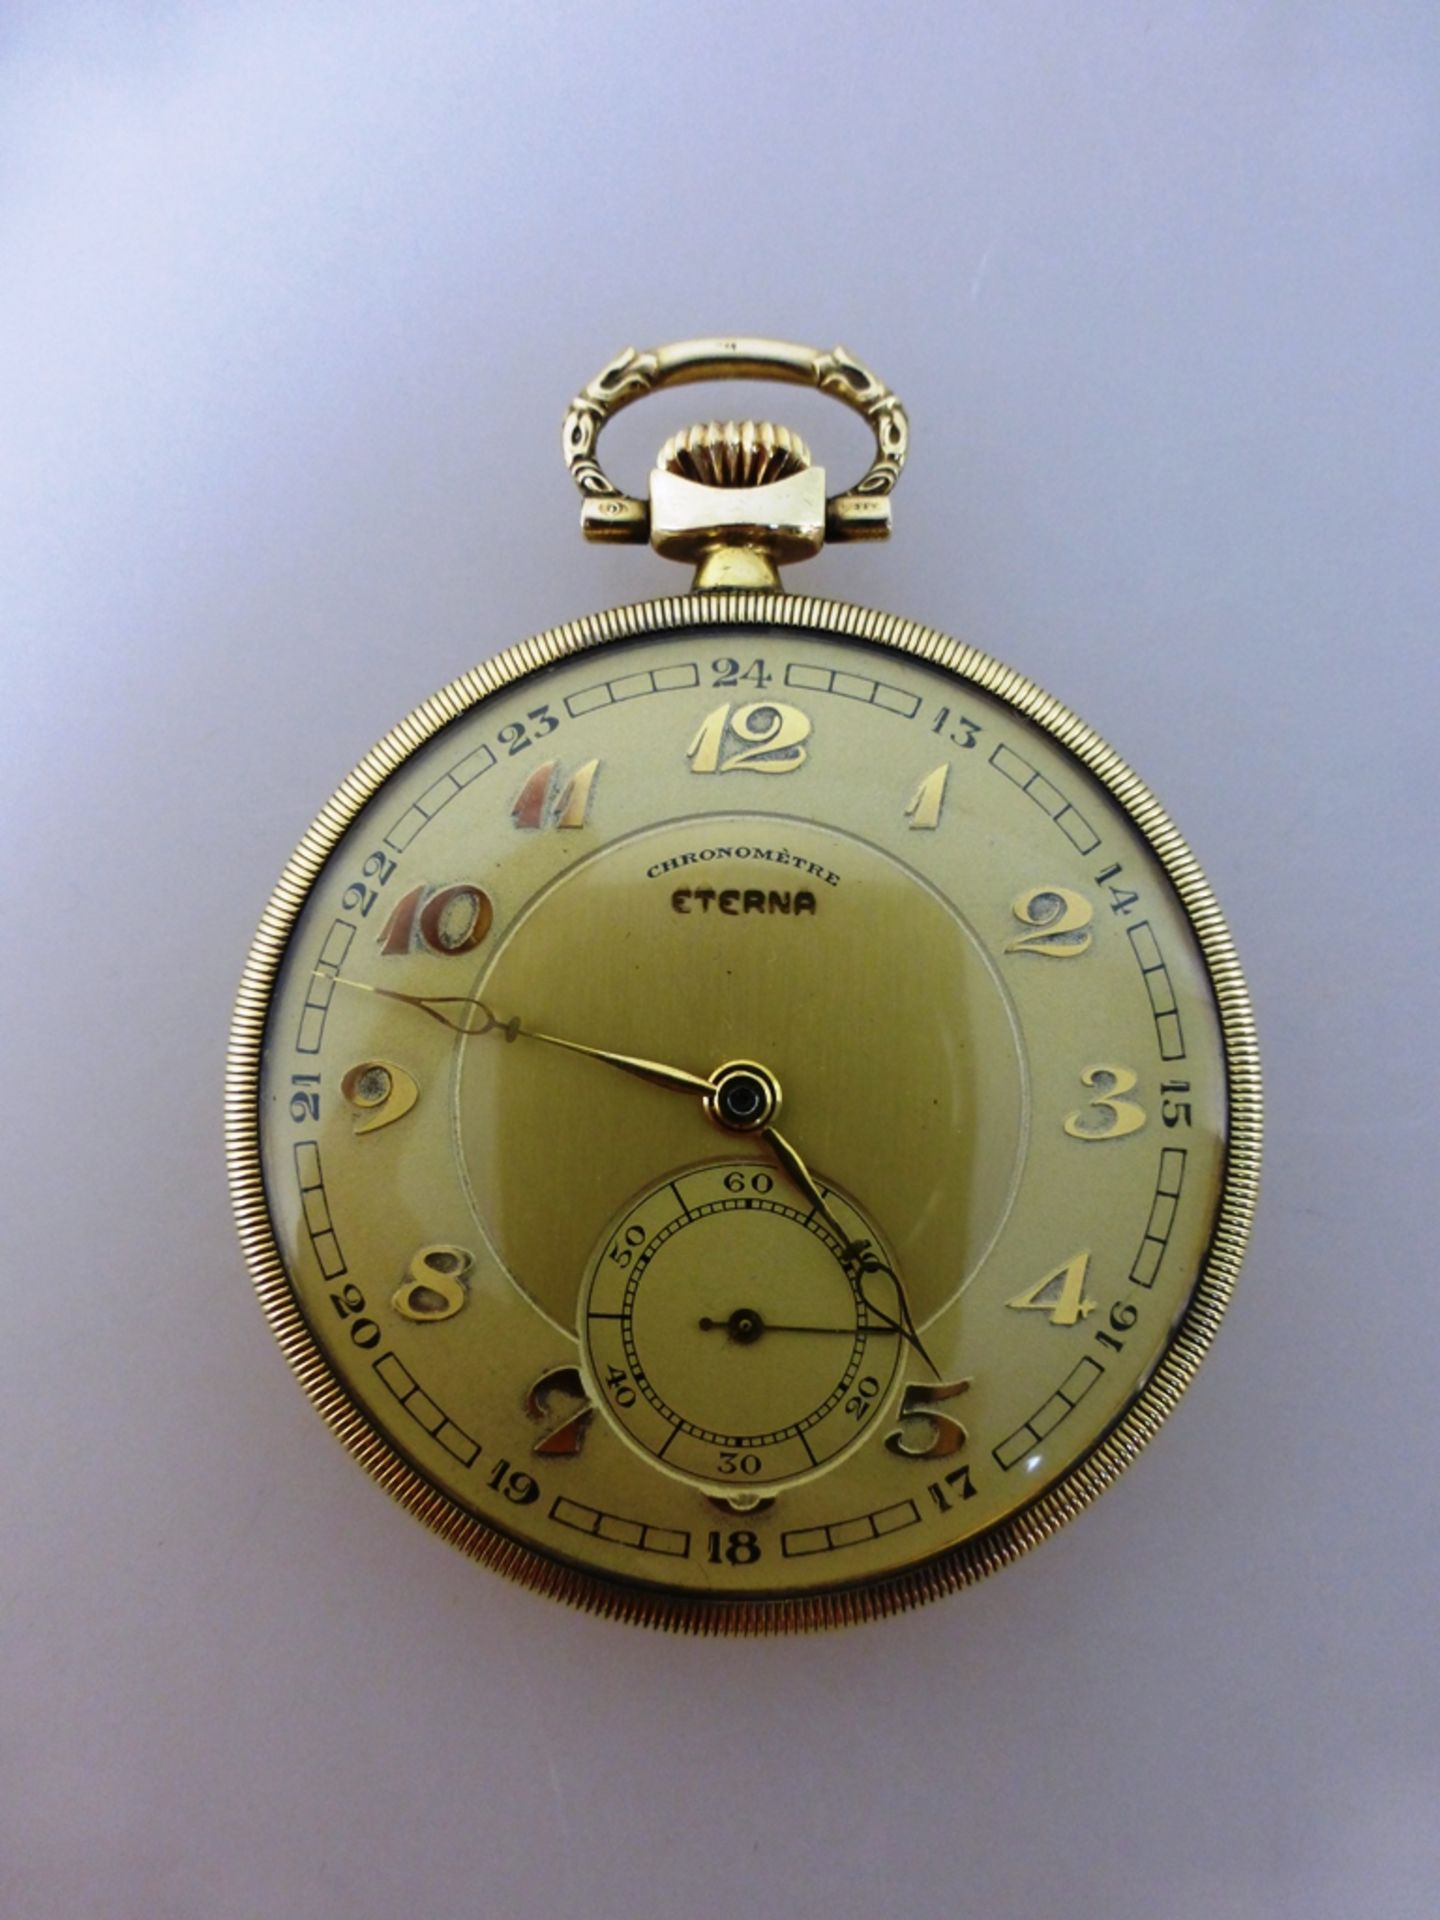 Goldene Frackuhr, Eterna Watch Co., mit Ornamenten verziertes Goldgehäuse, Feingehalt 585,